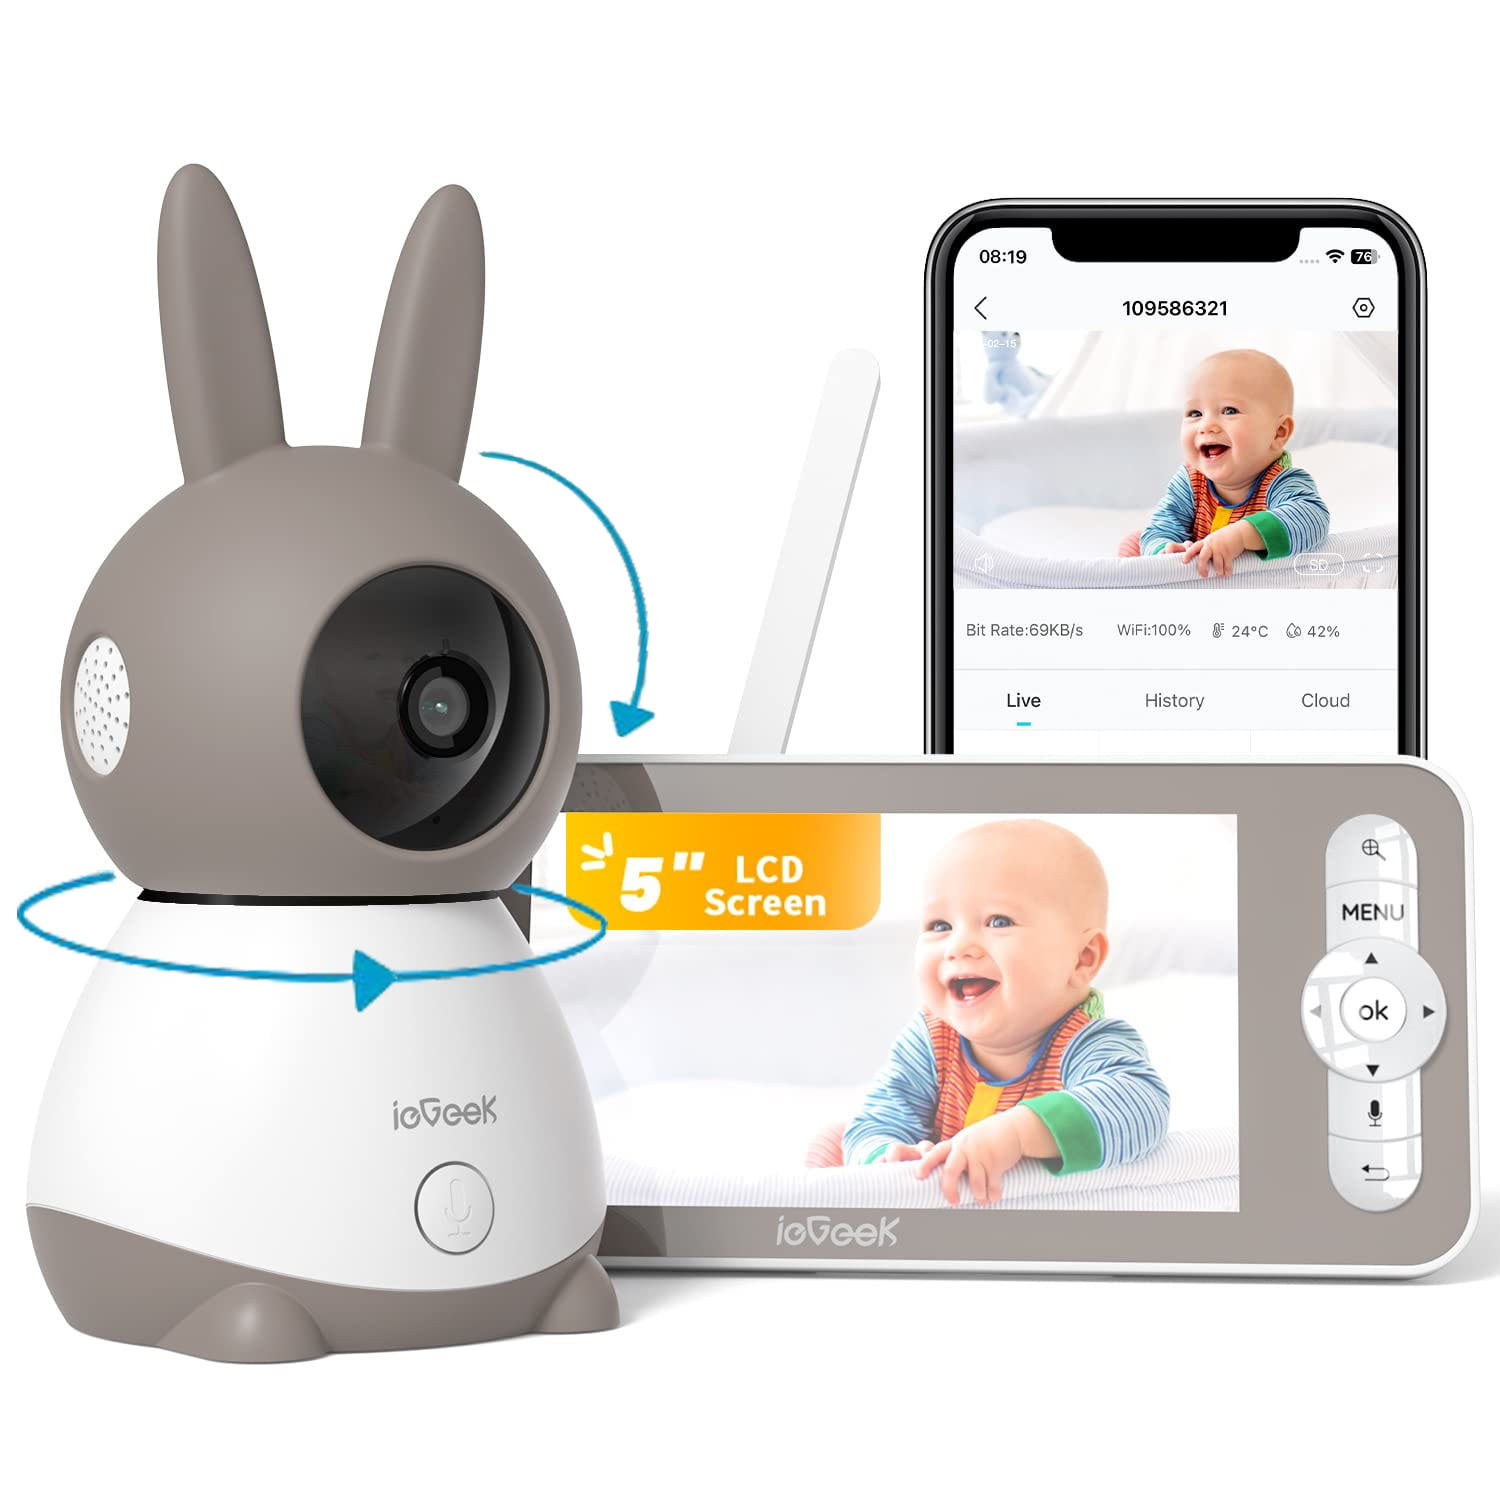 Vava 720p 5 Baby Monitor : Target